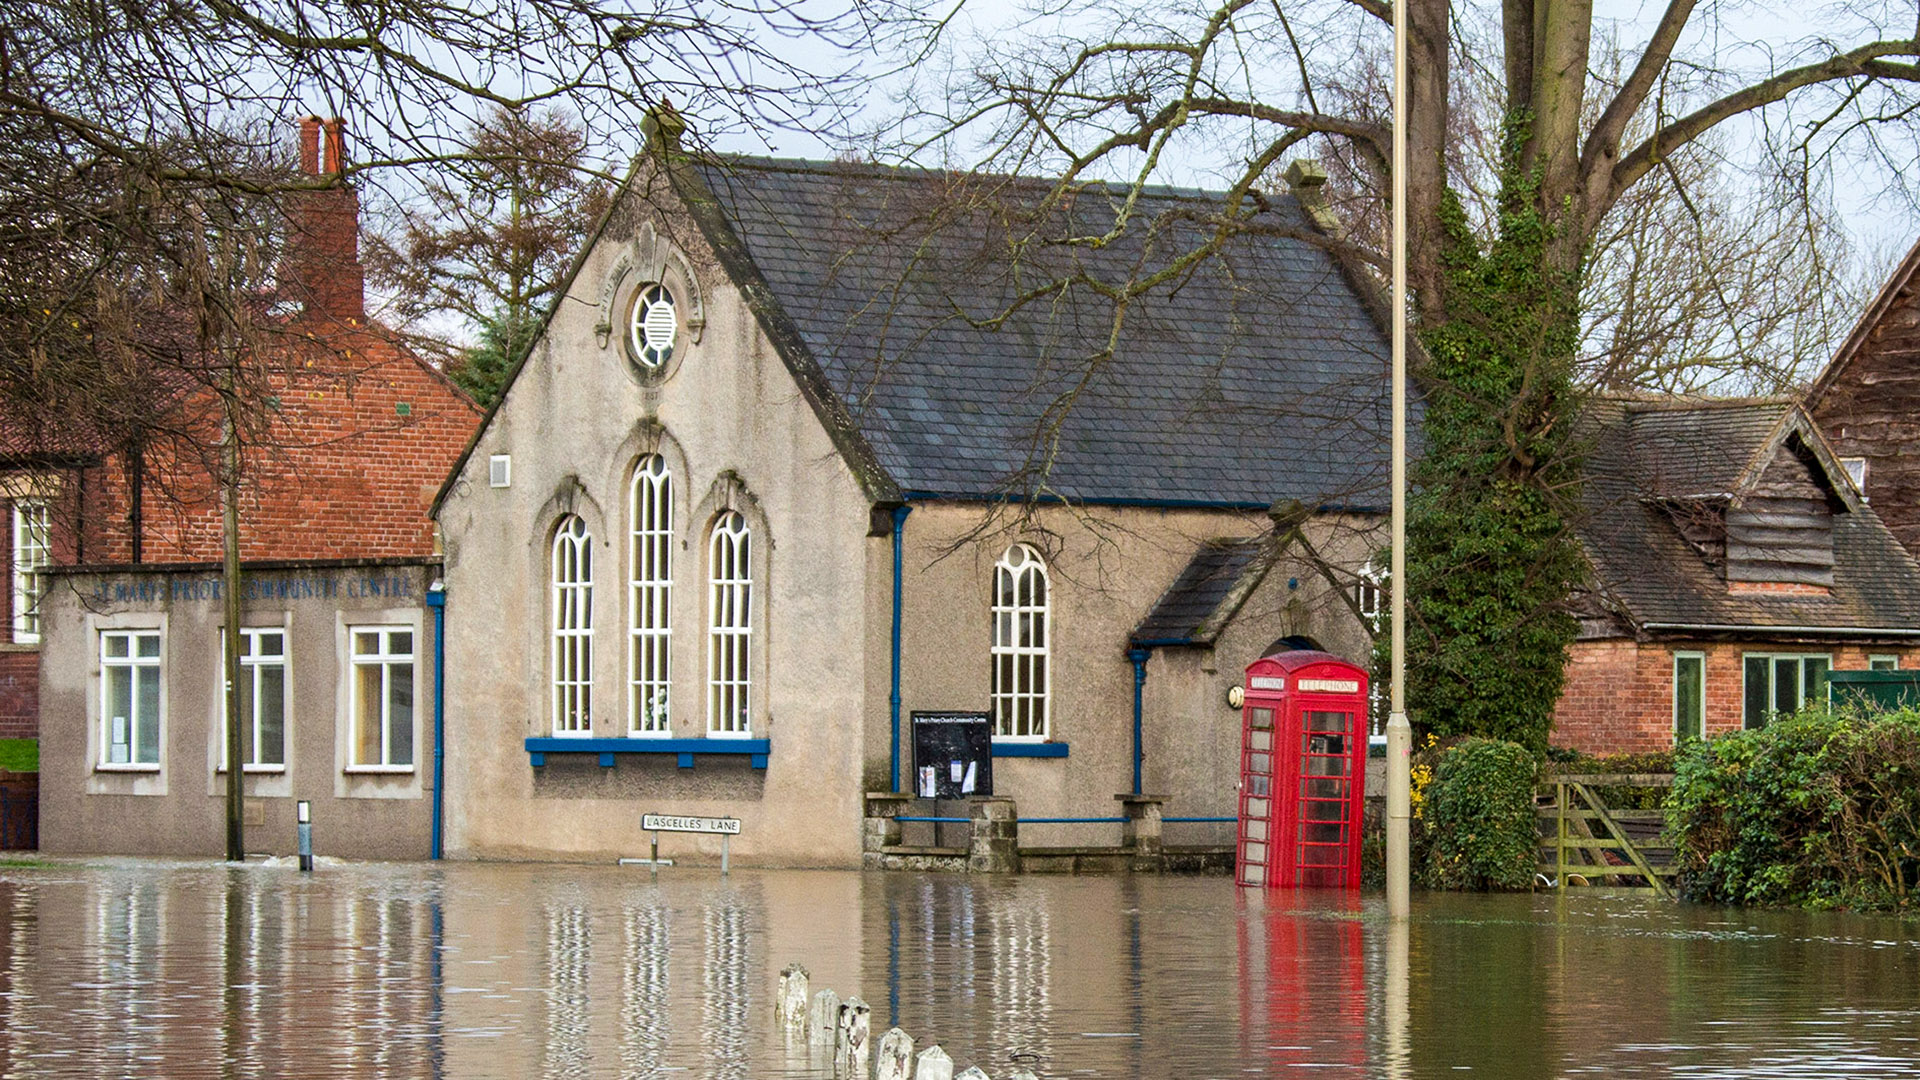 Flooding UK - adjusted